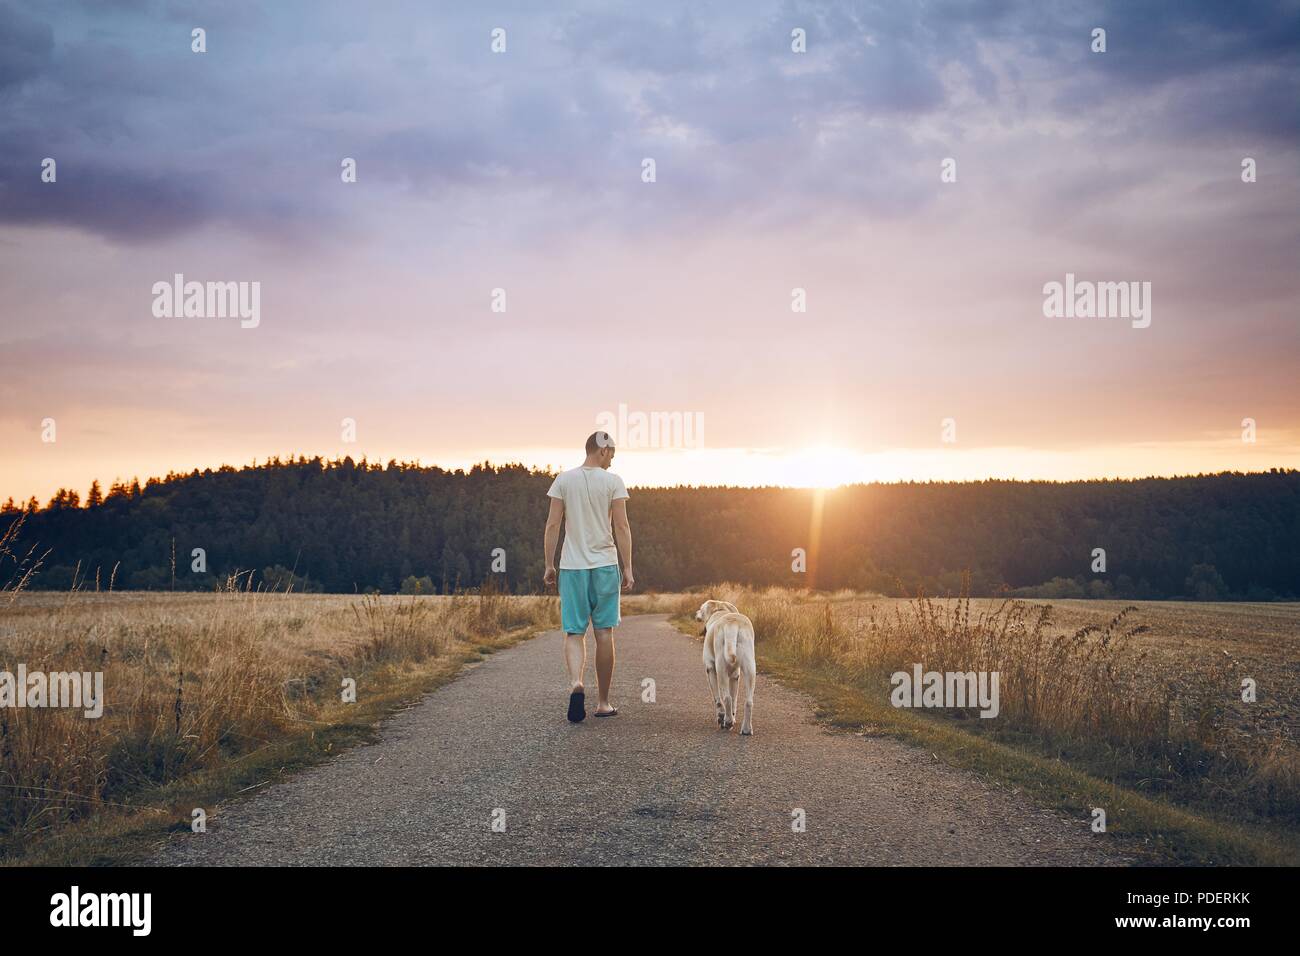 Vue arrière du jeune homme qui marche avec son chien (labrador retriever) sur le chemin rural au coucher du soleil. Banque D'Images